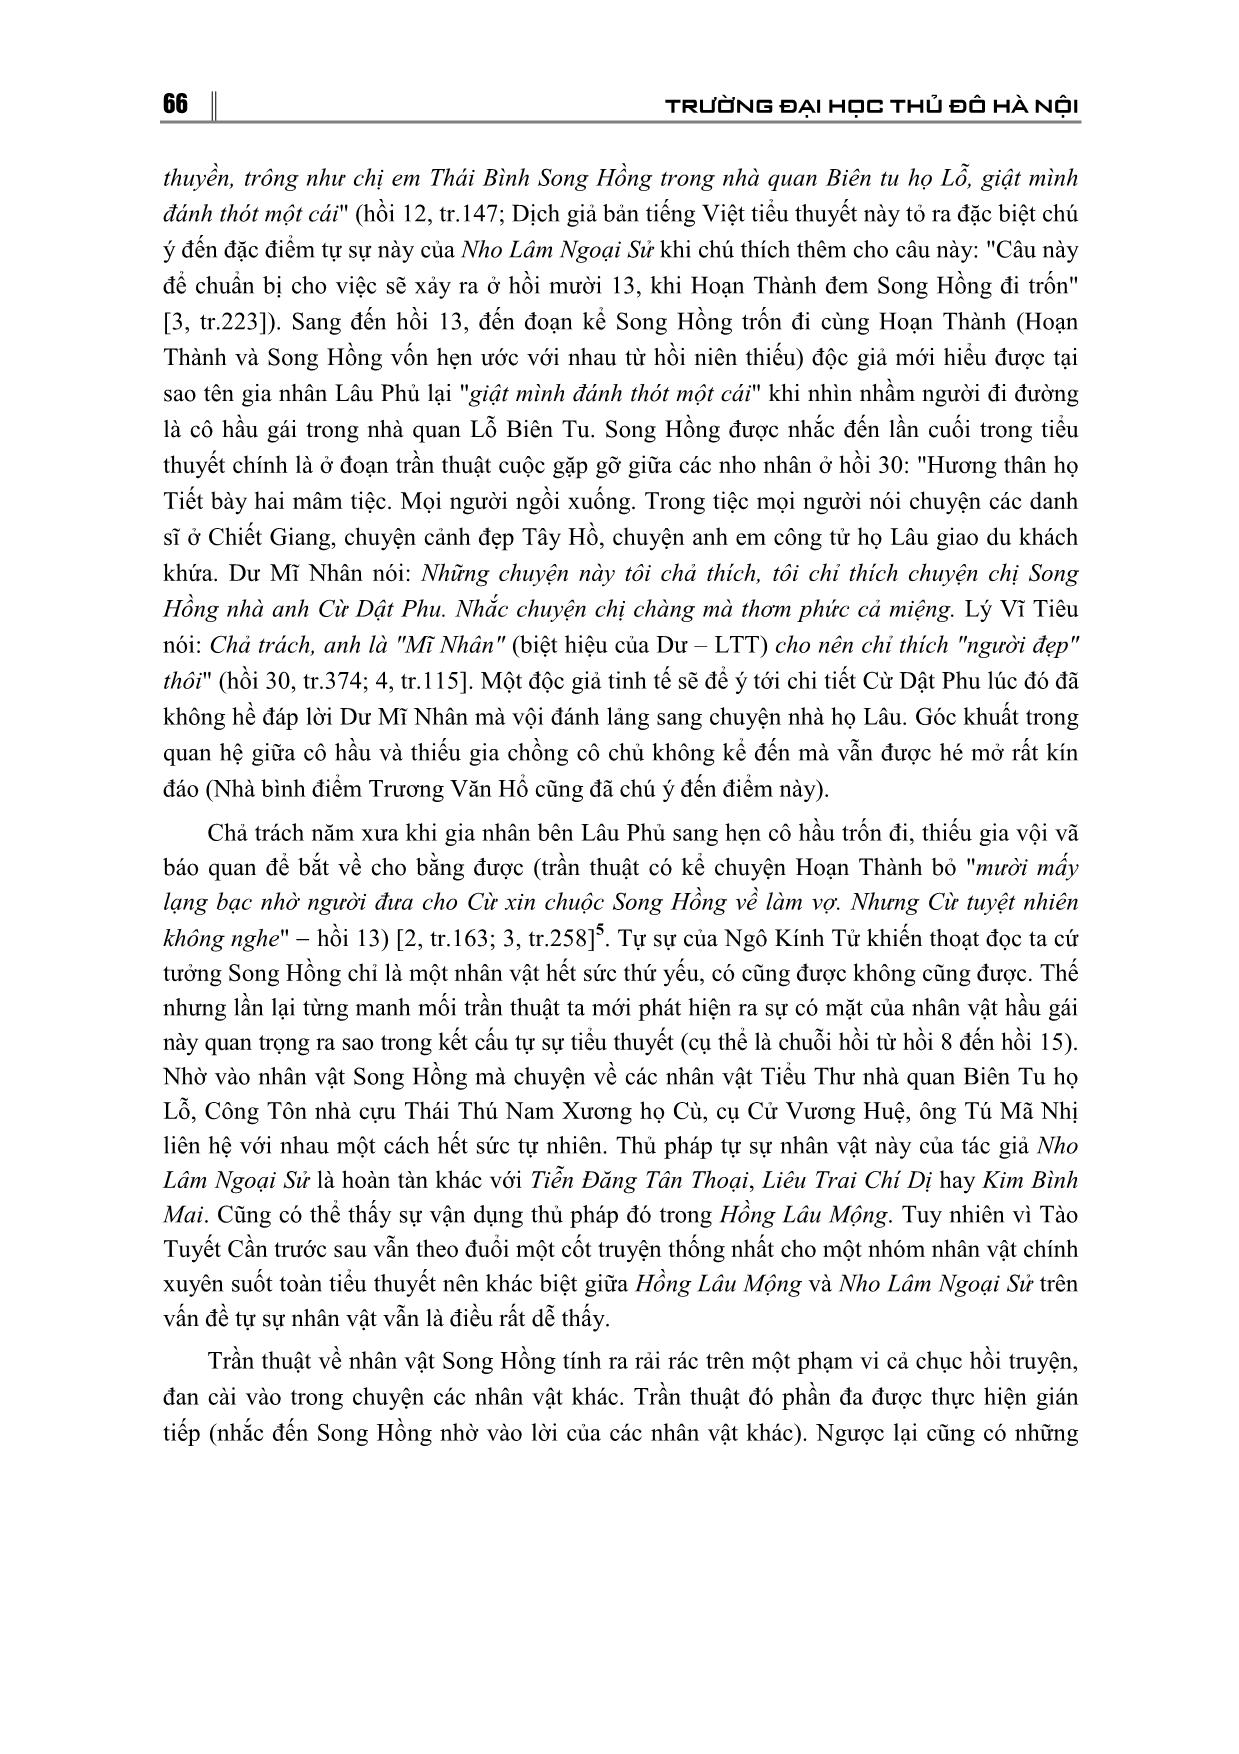 Thủ pháp tự sự mới về nhân vật của Nho Lâm Ngoại Sử và việc tái thức nhận chủ đề cuốn tiểu thuyết trang 5